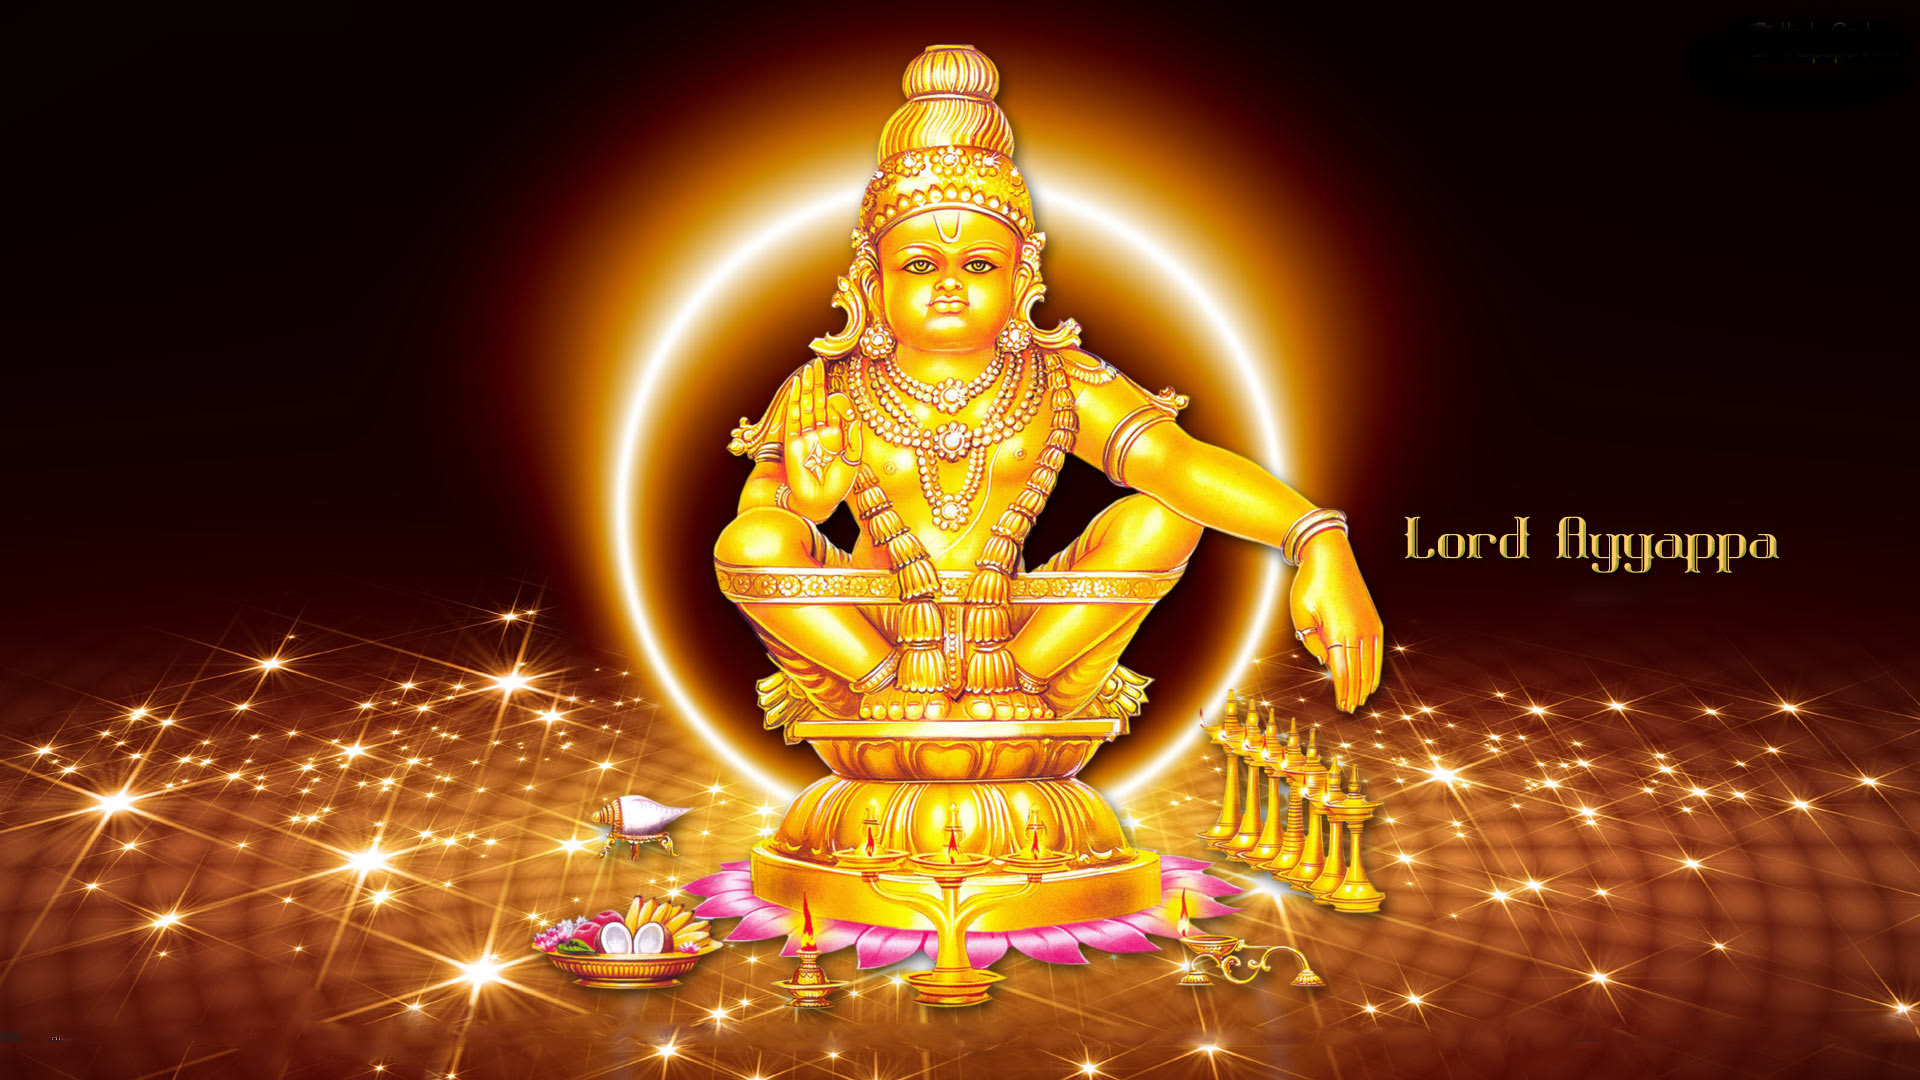 Ayyappa Wallpaper 1080p Download | Hindu Gods and Goddesses